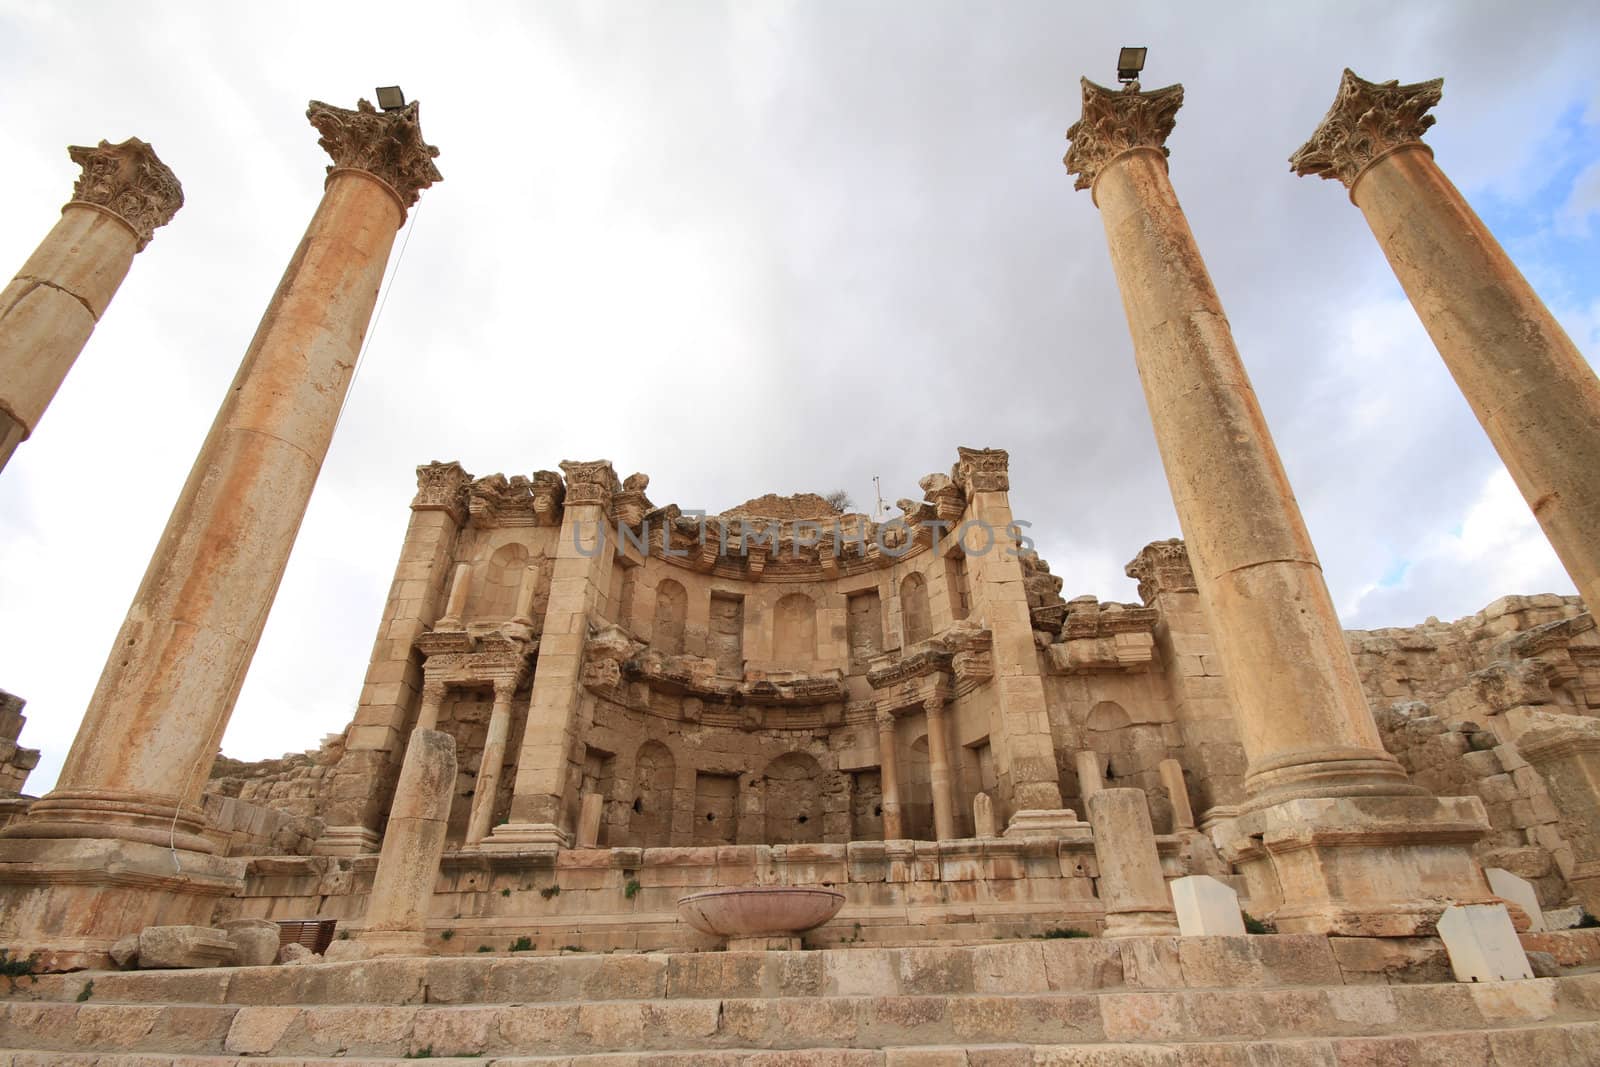 Temple of Artemis,Jarash Jordan by thanomphong